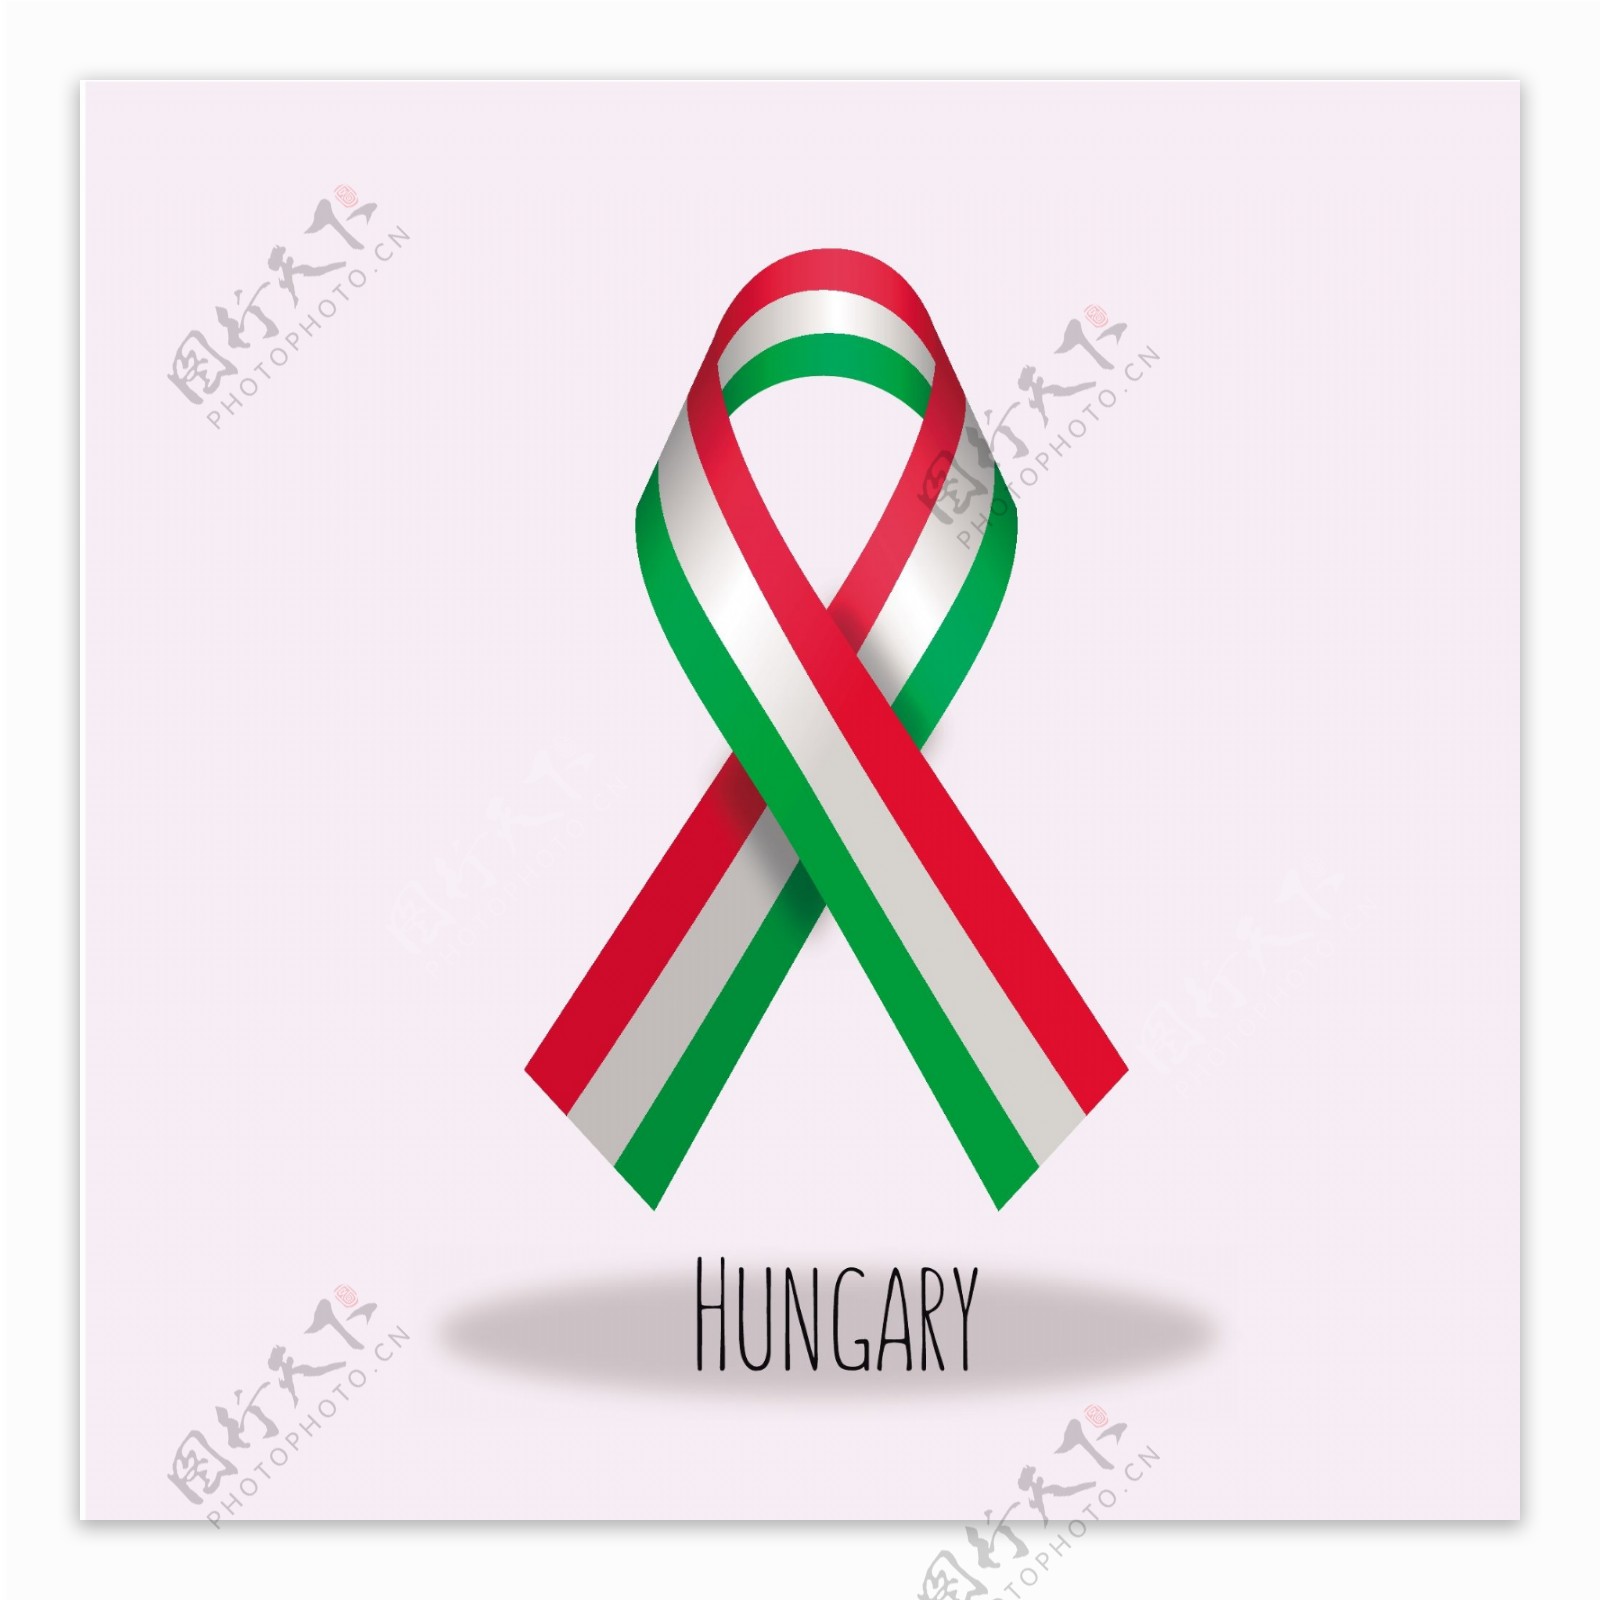 匈牙利国旗丝带设计